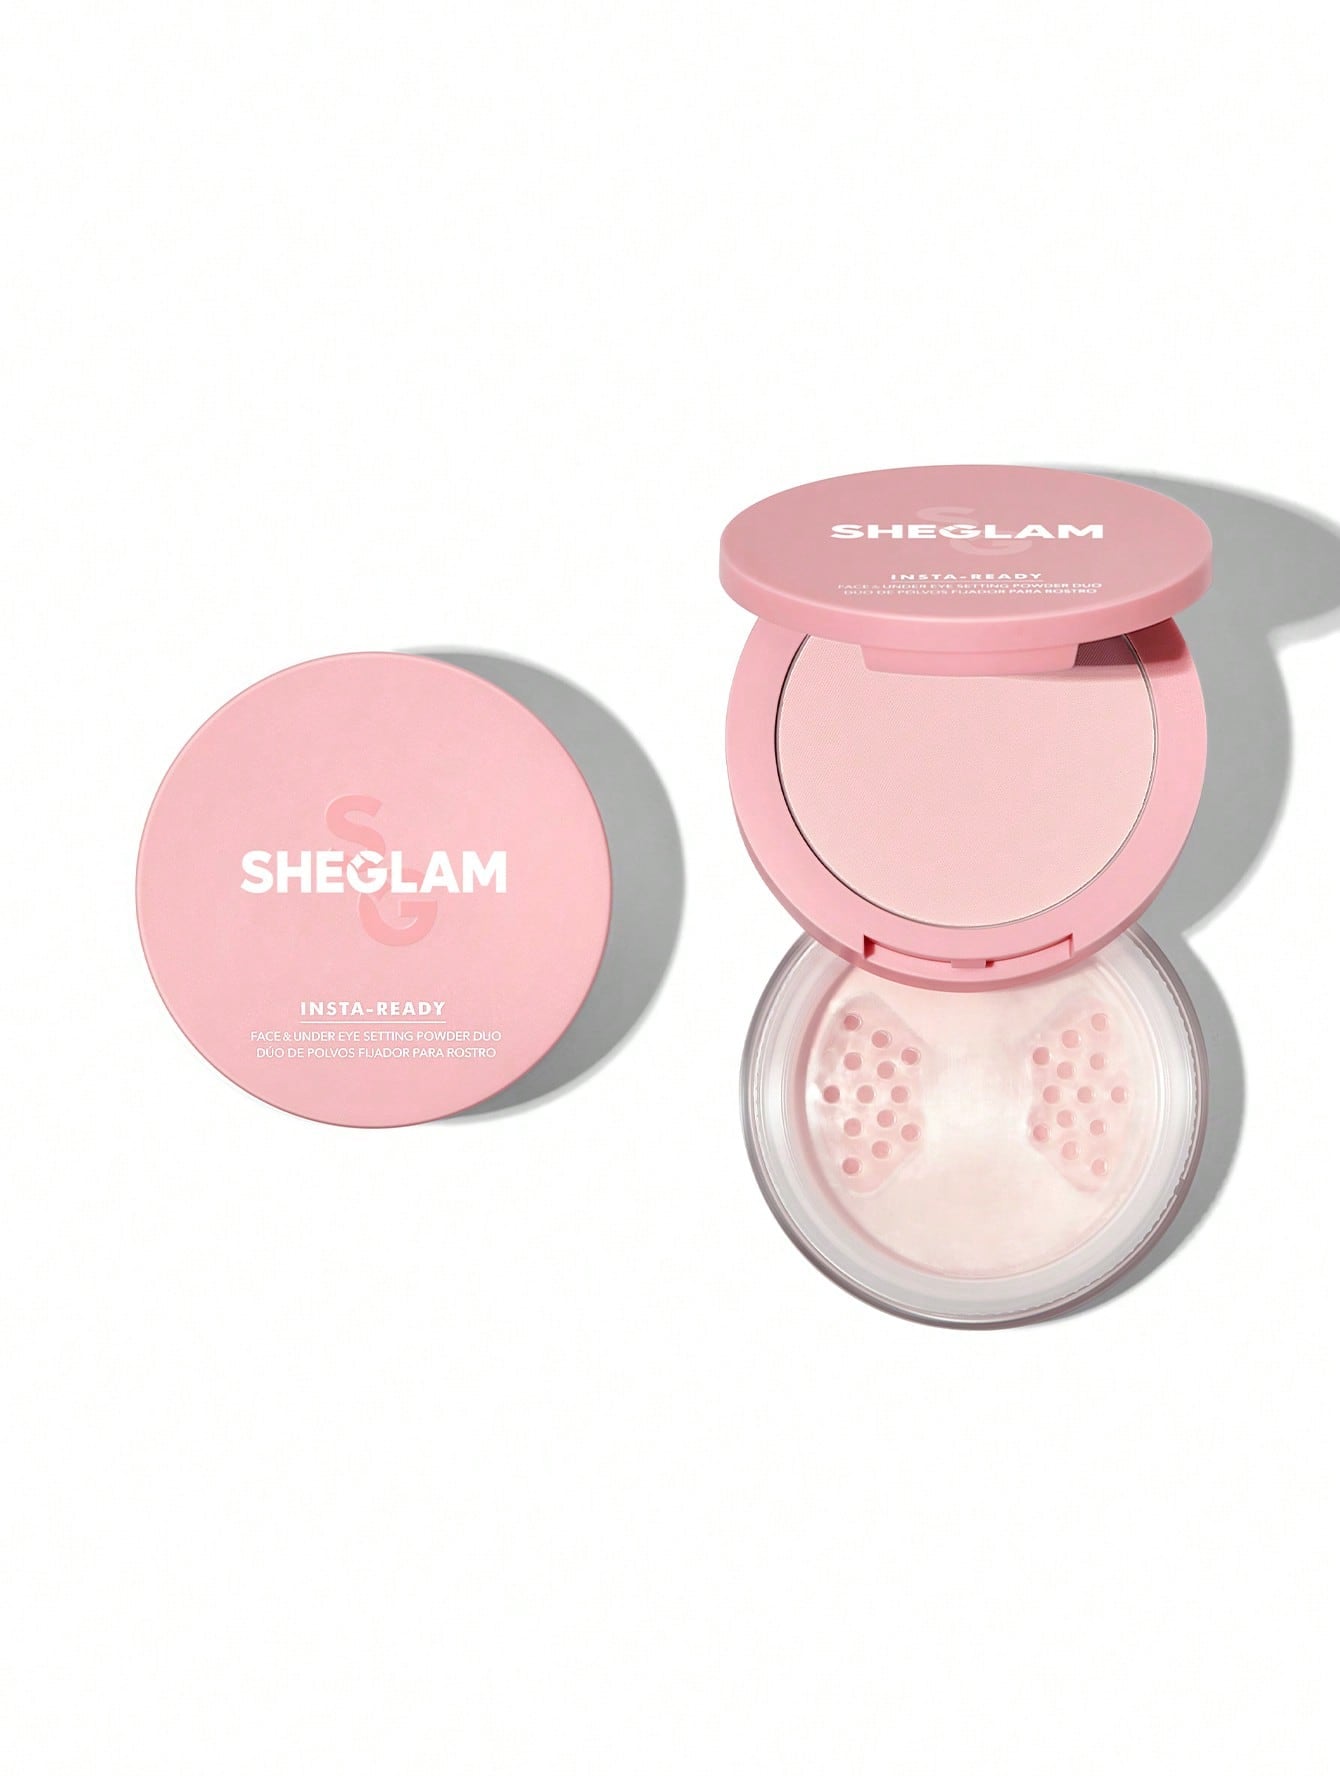 SHEGLAM Insta-Ready Face & Under Eye Setting Powder Duo-Bubblegum 2 In 1 - Negative Apparel